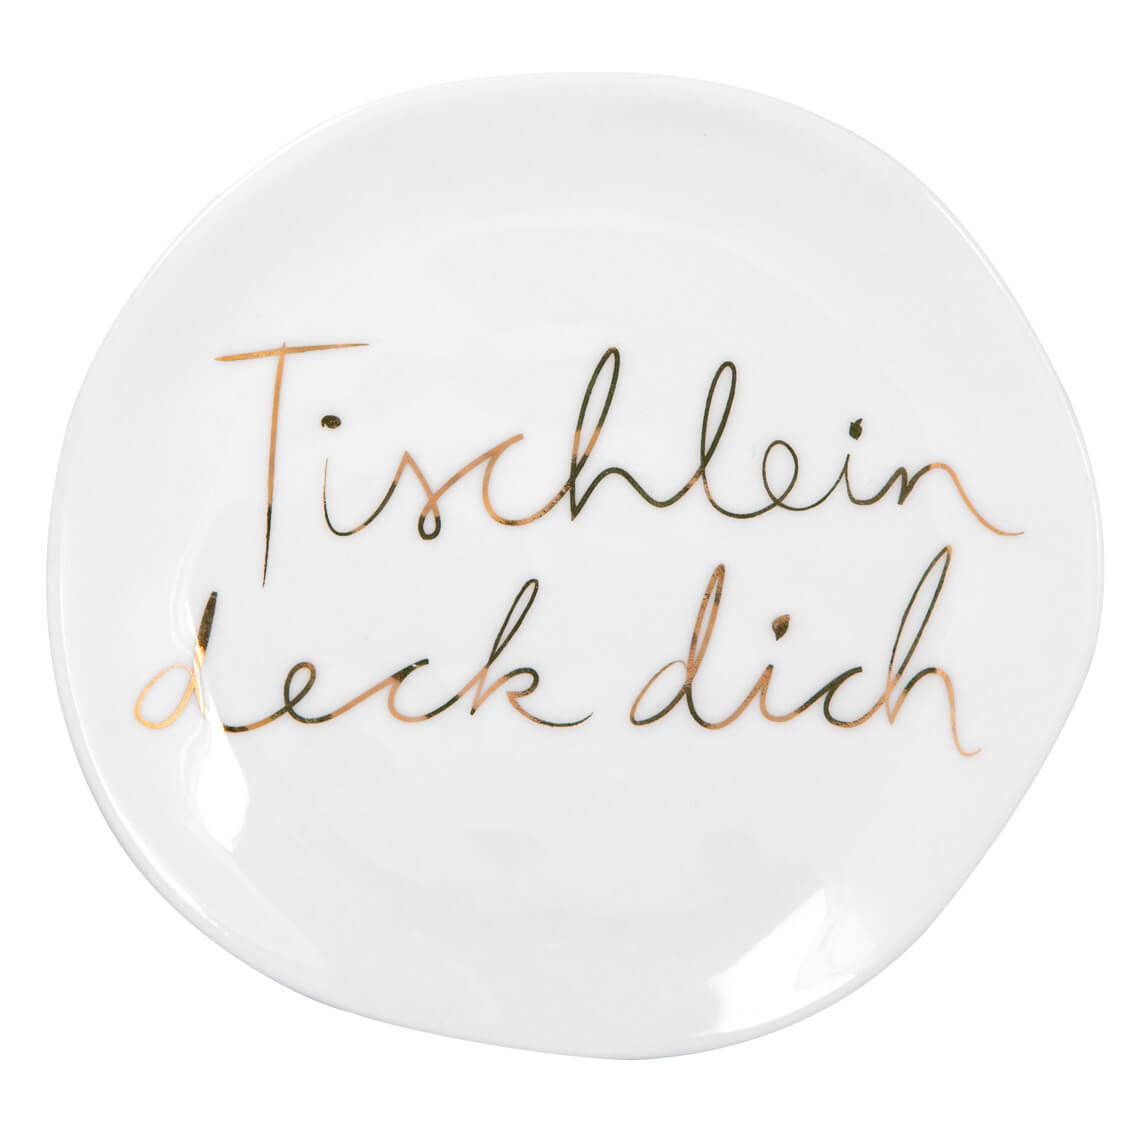 DINNING Mix & Match Teller "Tischlein deck dich"